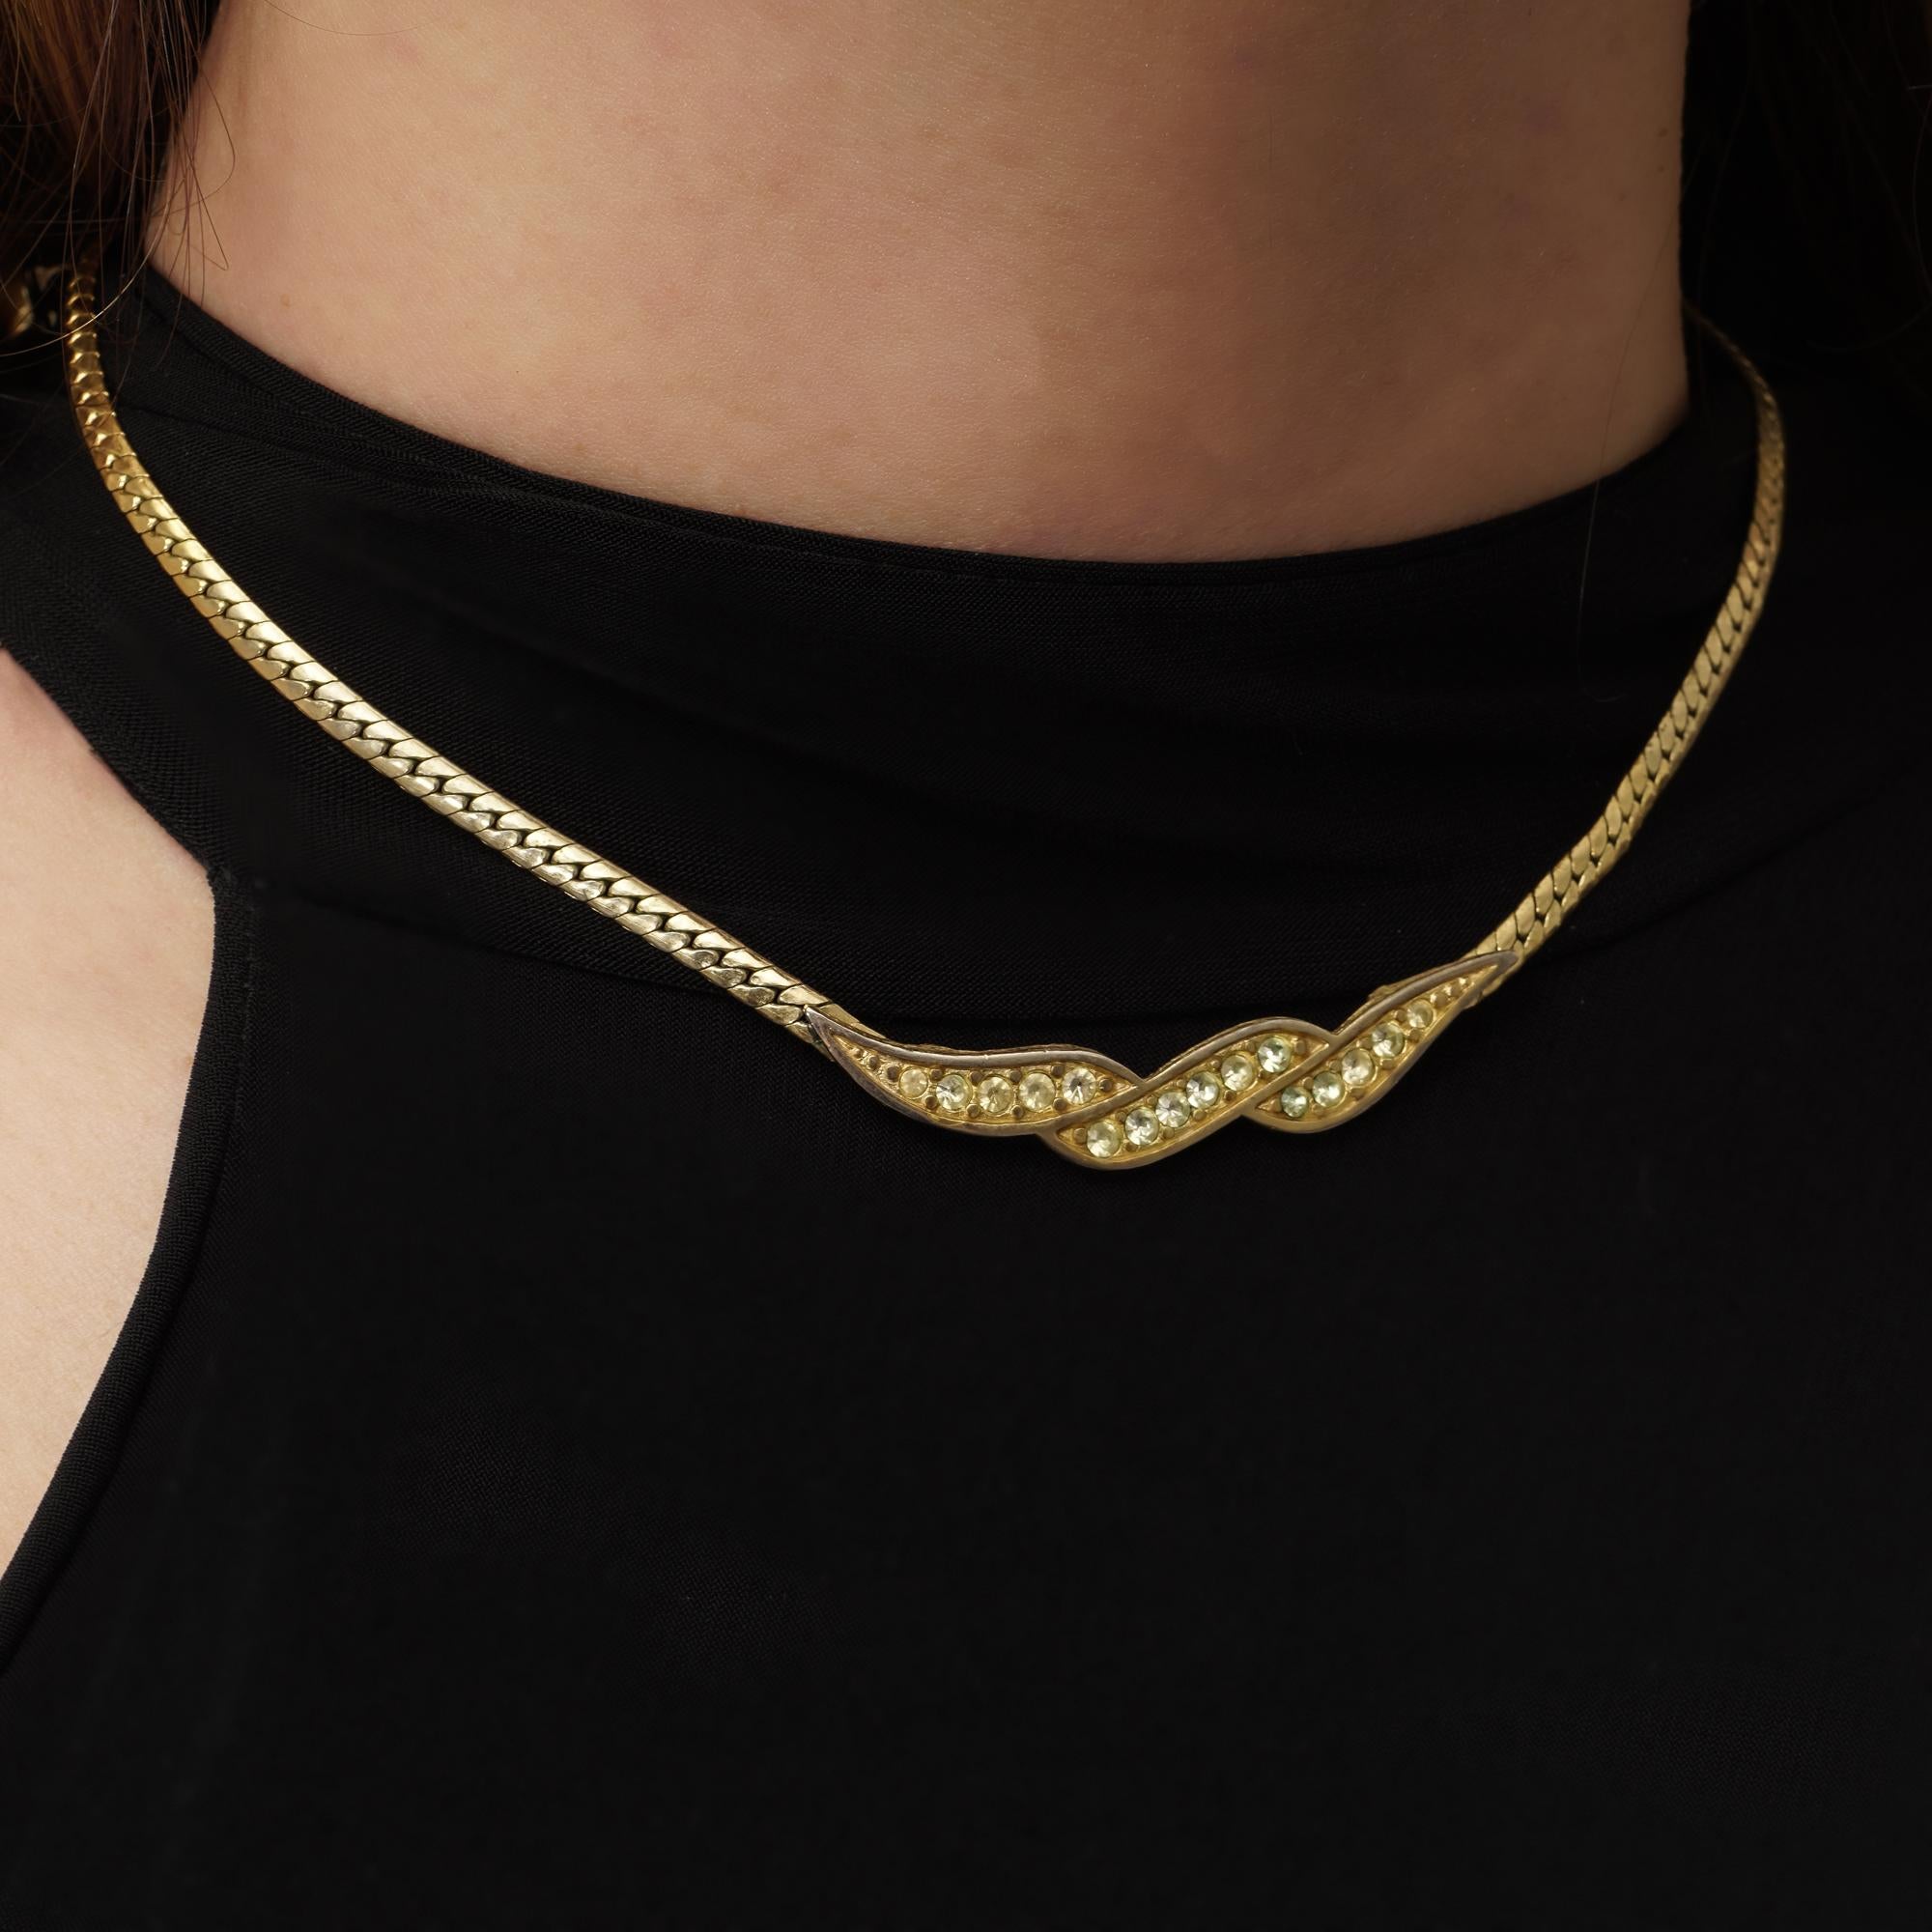 Transportez-vous vers l'incarnation du glamour vintage avec ce collier vintage Givenchy en ton jaune, fabriqué vers les années 1990, qui rayonne l'allure intemporelle et la sophistication synonymes de la marque Givenchy.

Exquisément conçu et